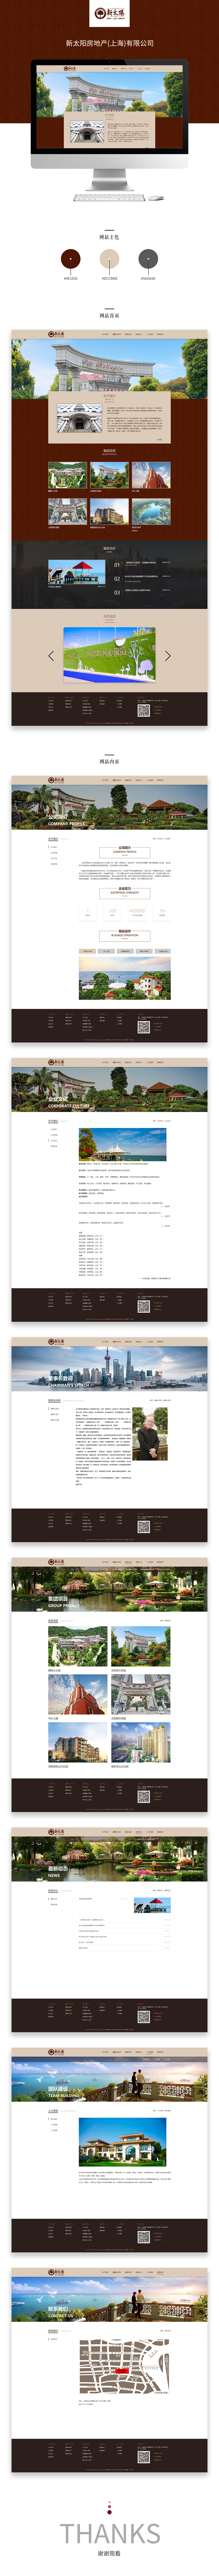 公司案例展示2018-40新太陽房地產(上海)有限公司